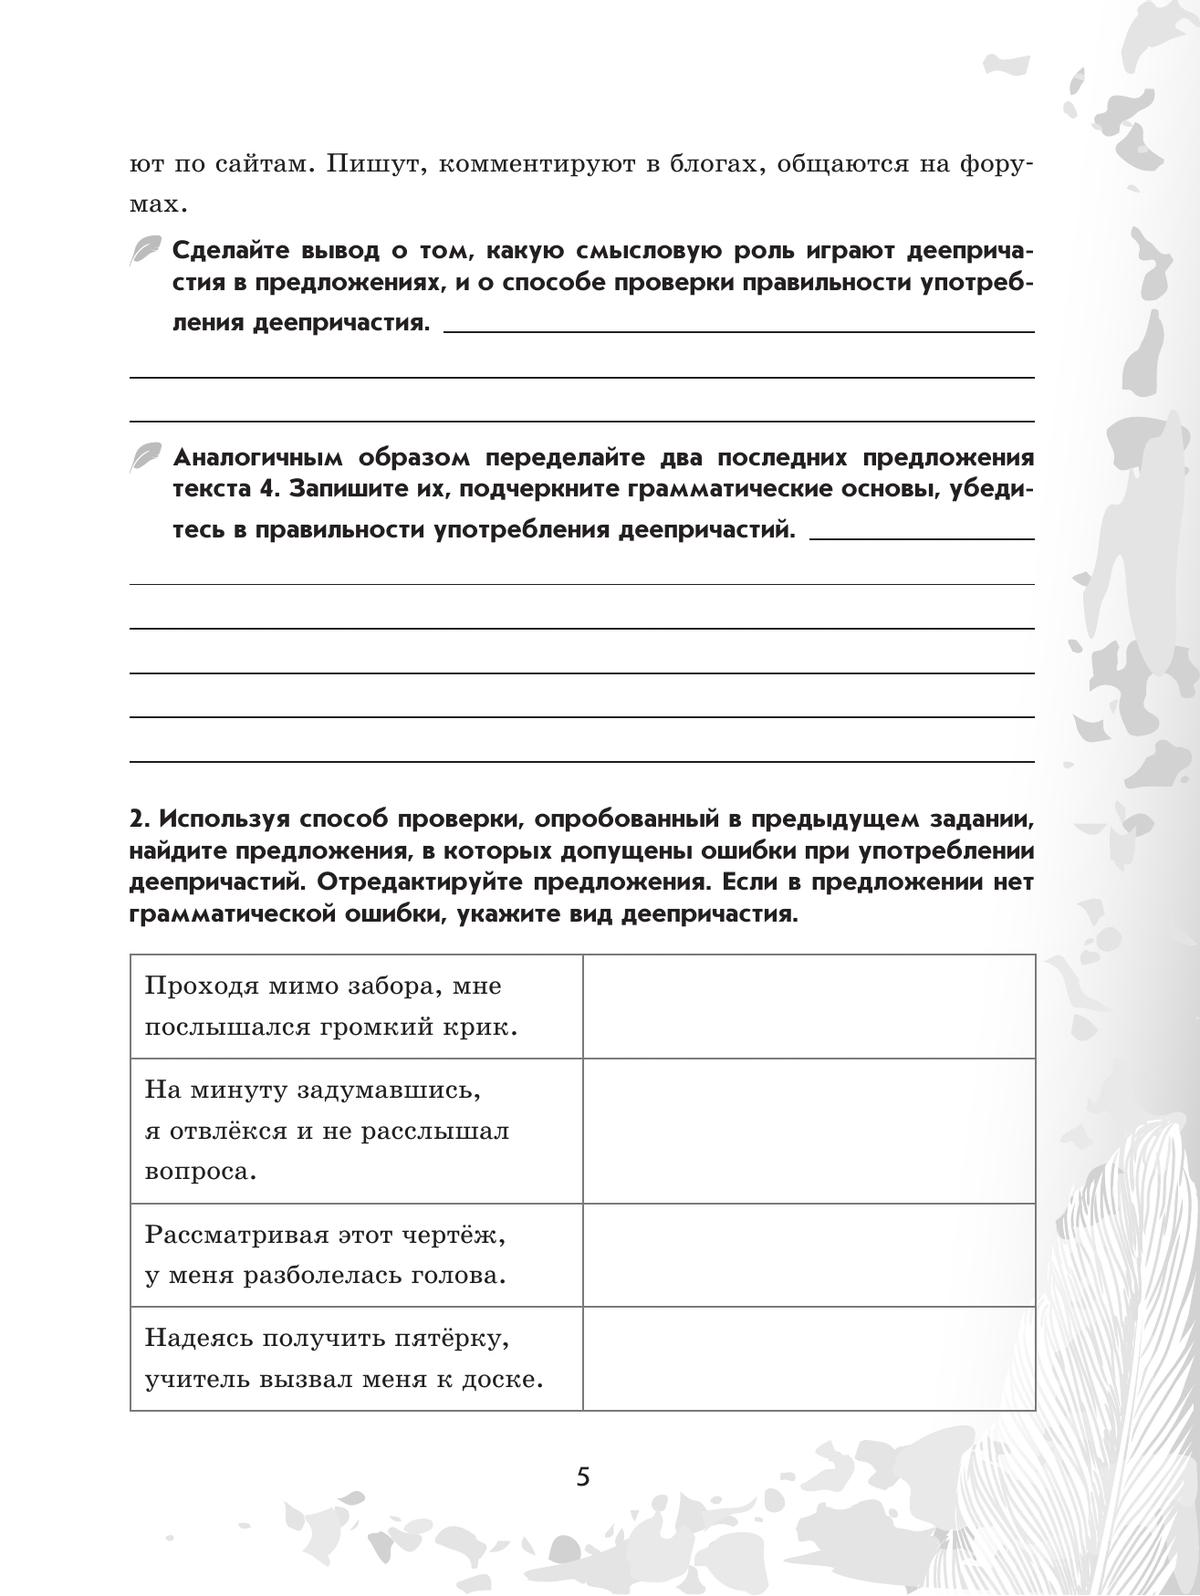 Русский язык. 7 класс. Рабочая тетрадь. Часть 2 6